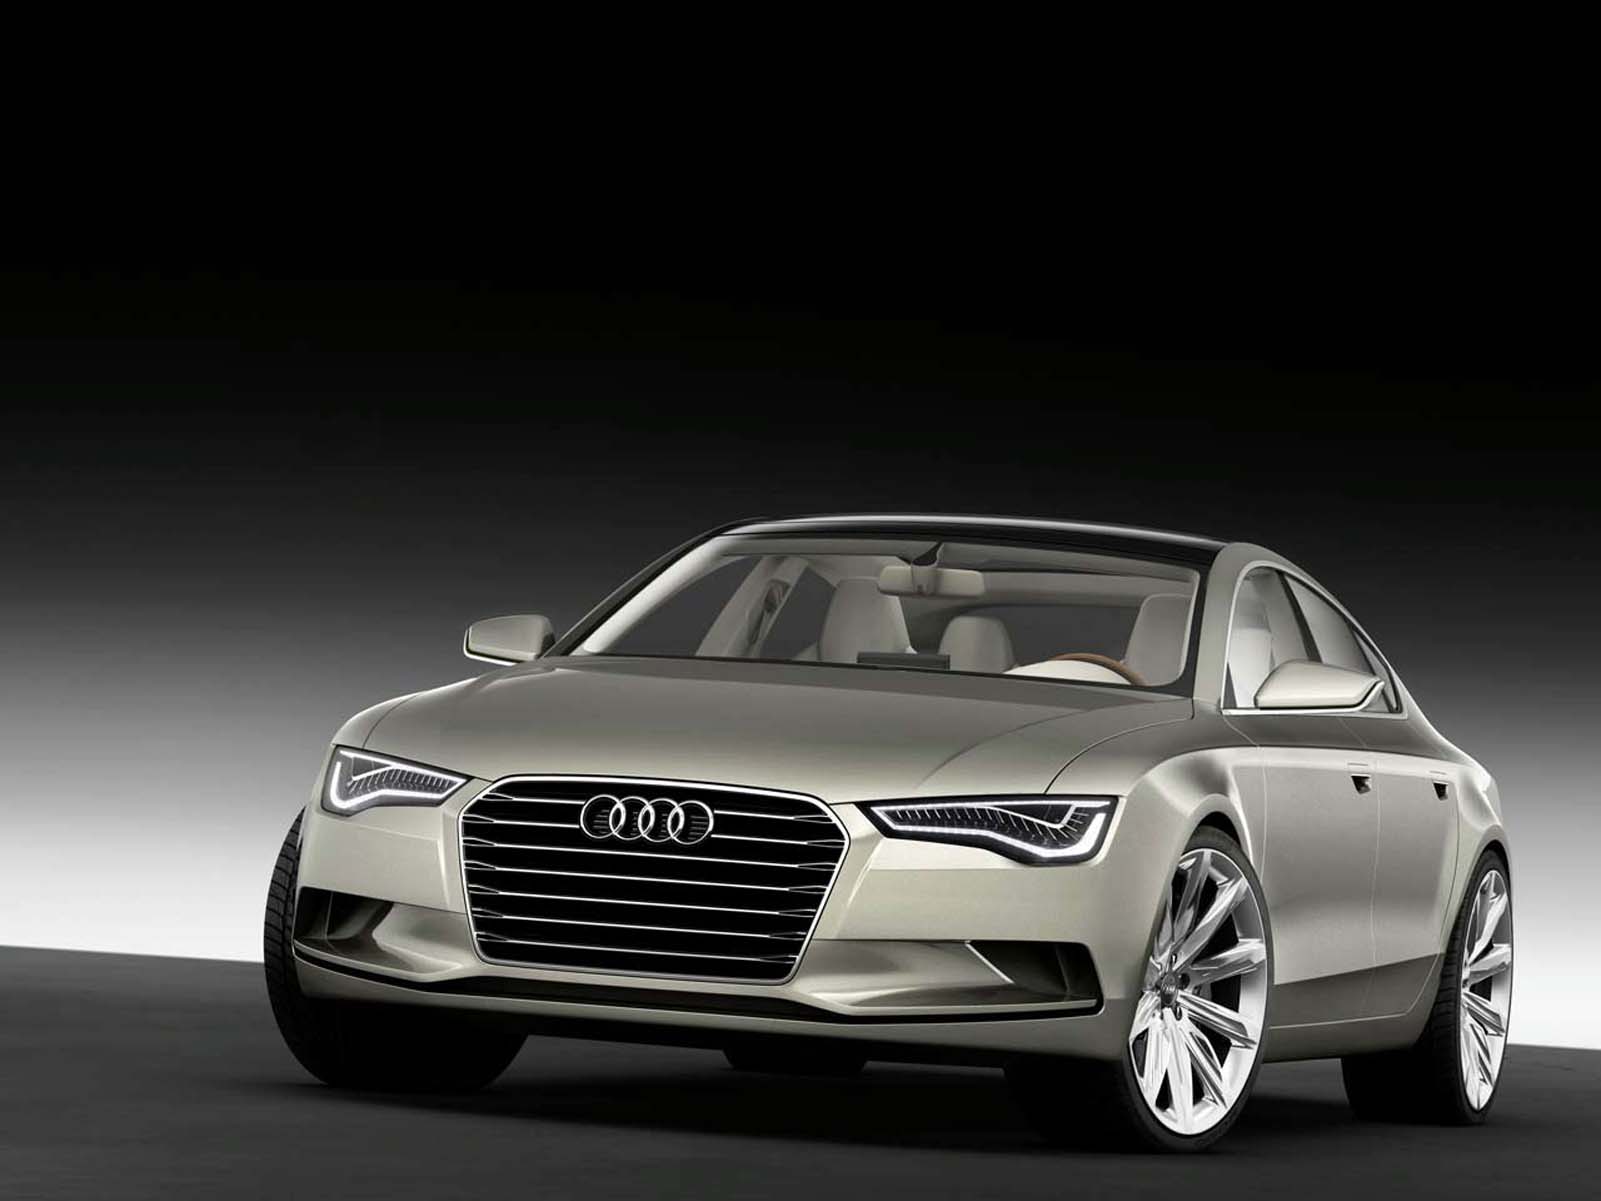 Image principale de l'actu: Audi a7 sportback concept presentation au salon de detroit 